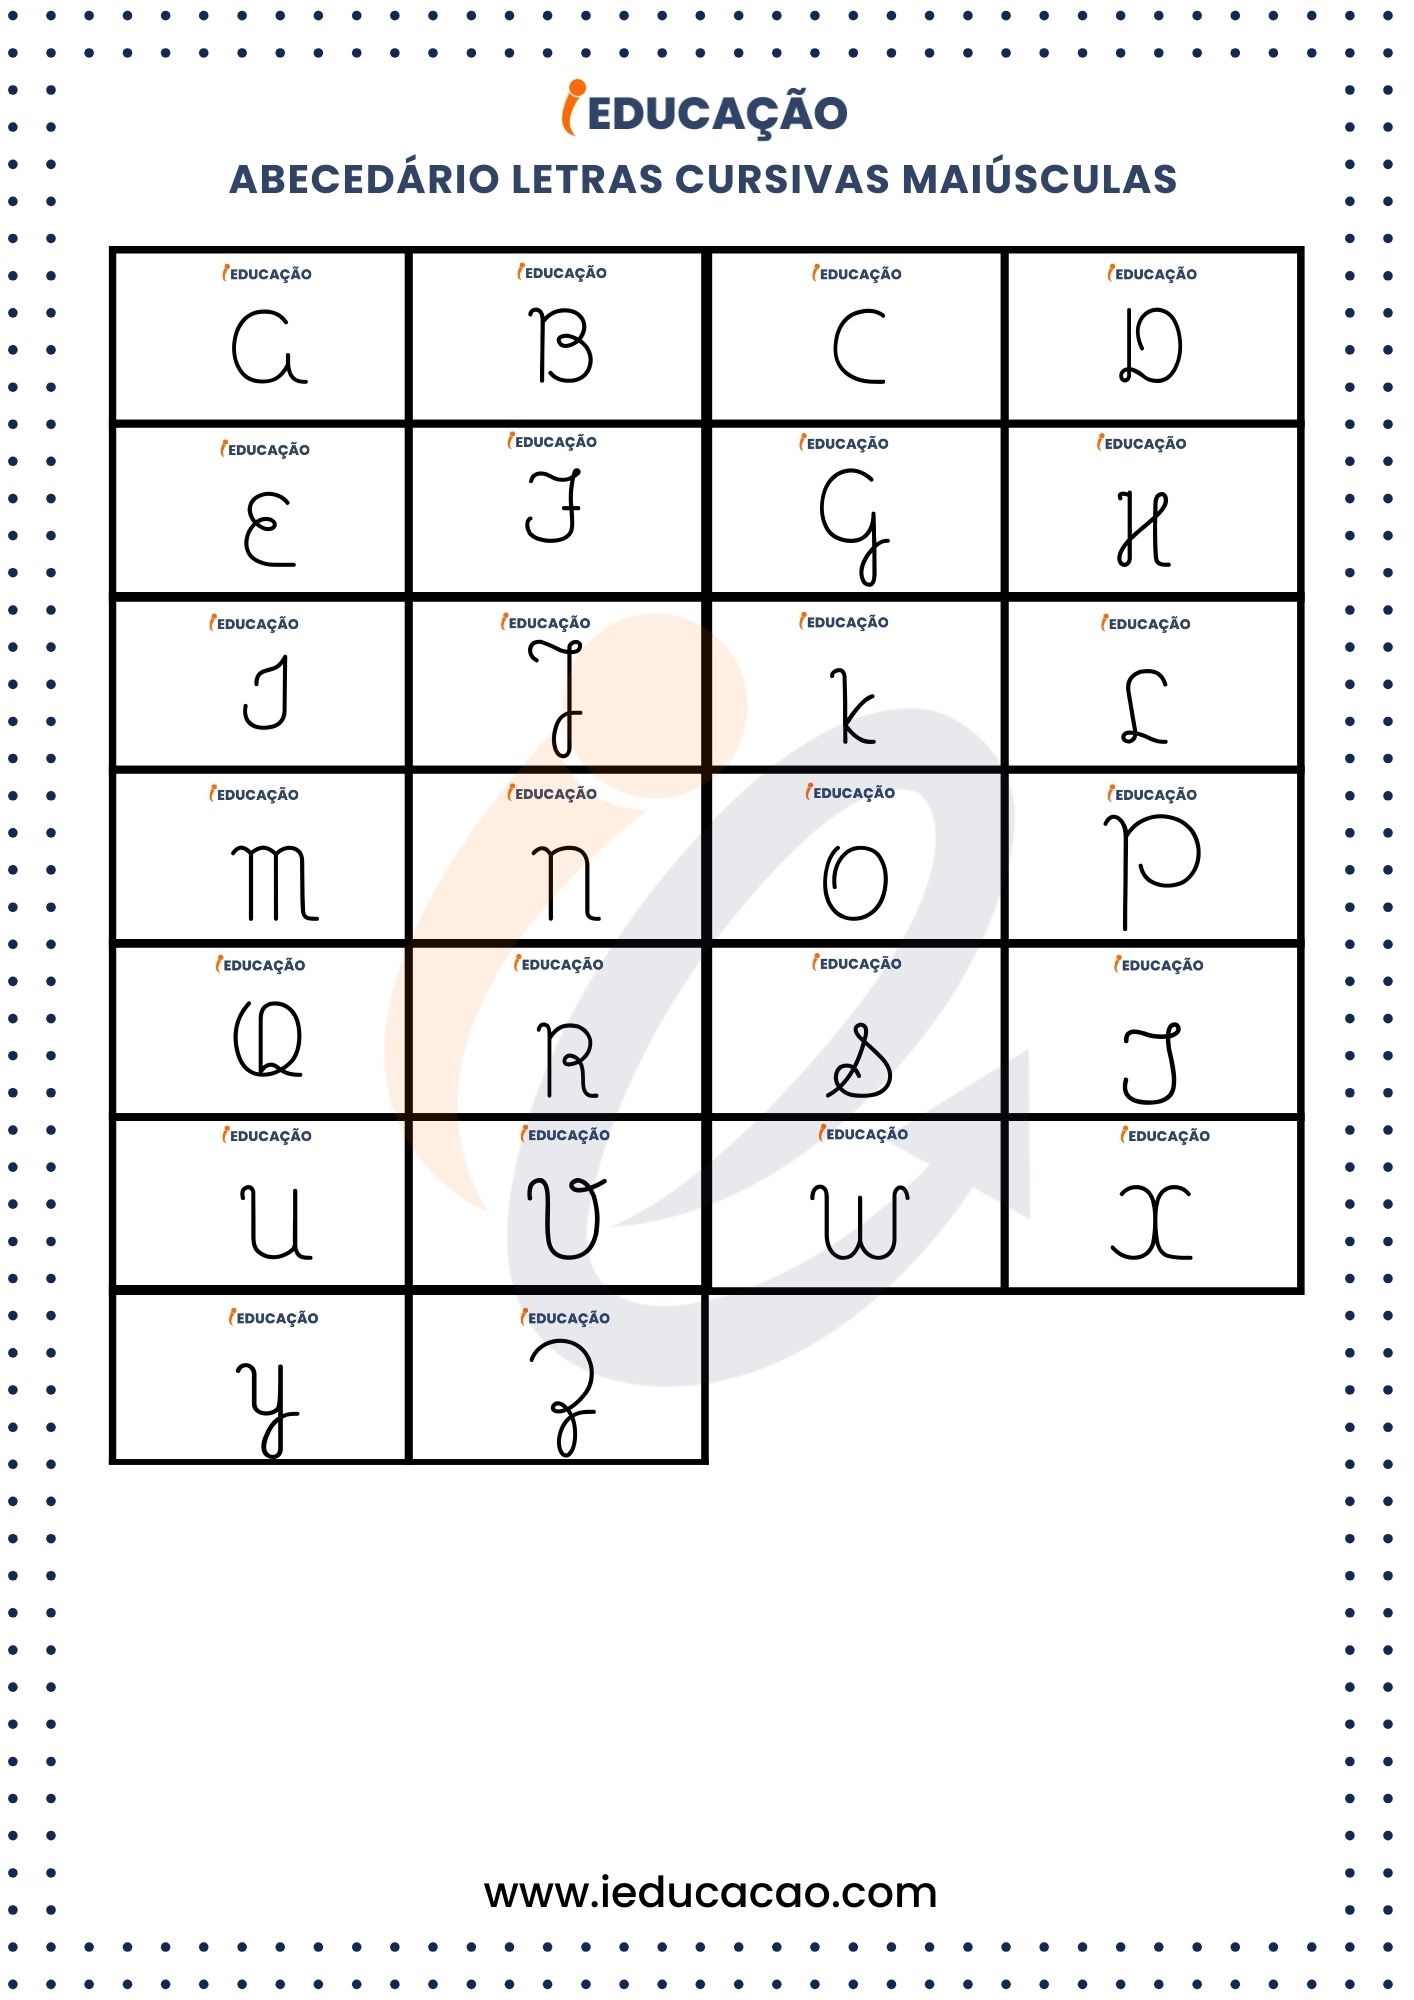 Abecedário com Letras Cursivas Maiúsculas- Alfabeto completo cursivo.jpg